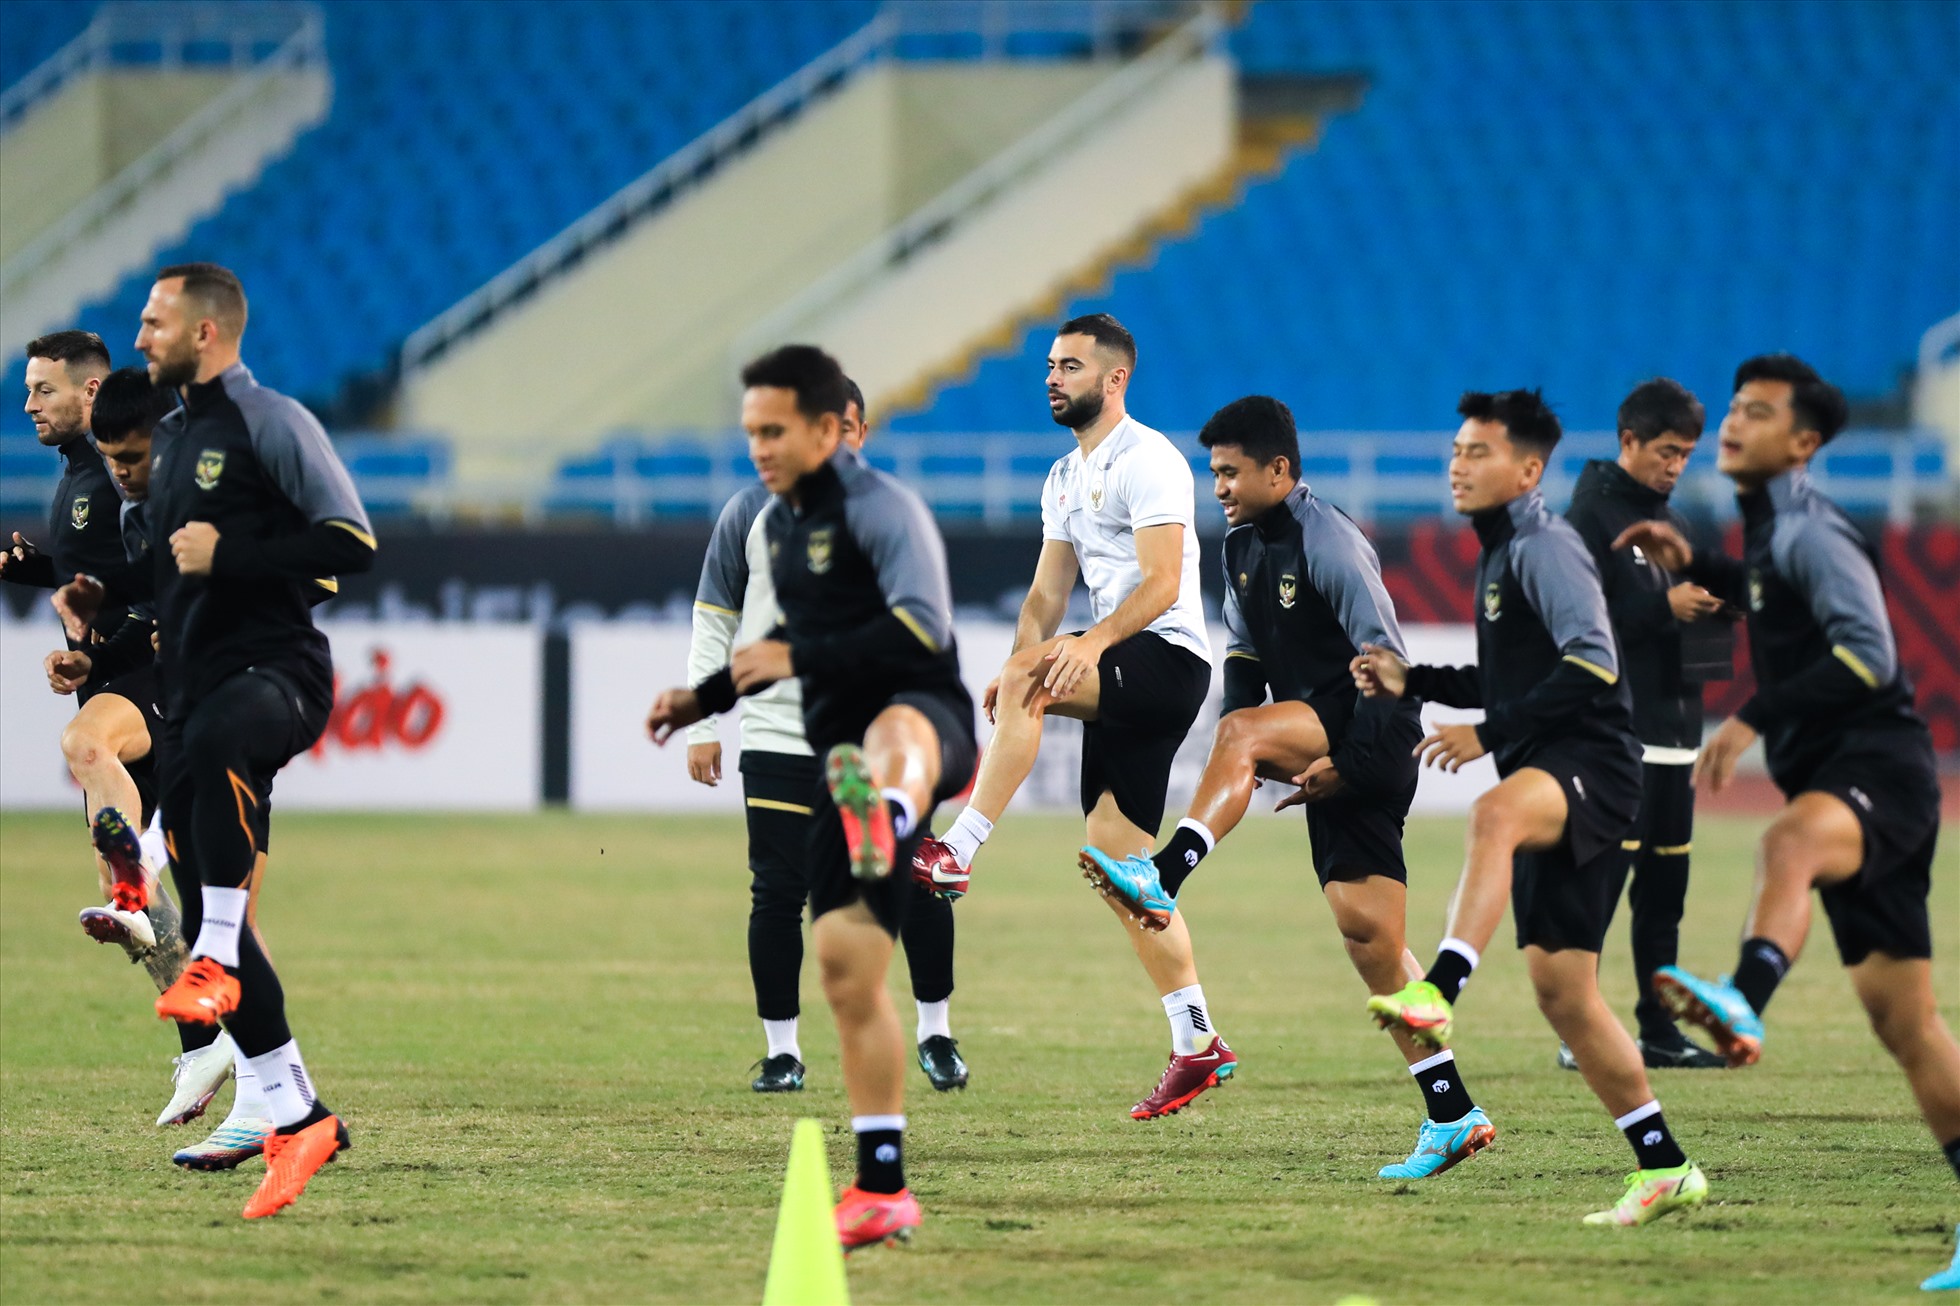 Tối nay (8.1), đội tuyển Indonesia đã có buổi tập đầu tiên tại Việt Nam và cũng là buổi tập làm quen sân thi đấu chính thức Mỹ Đình trước trận lượt về bán kết AFF Cup 2022 diễn ra lúc 19h30 tối mai (9.1).